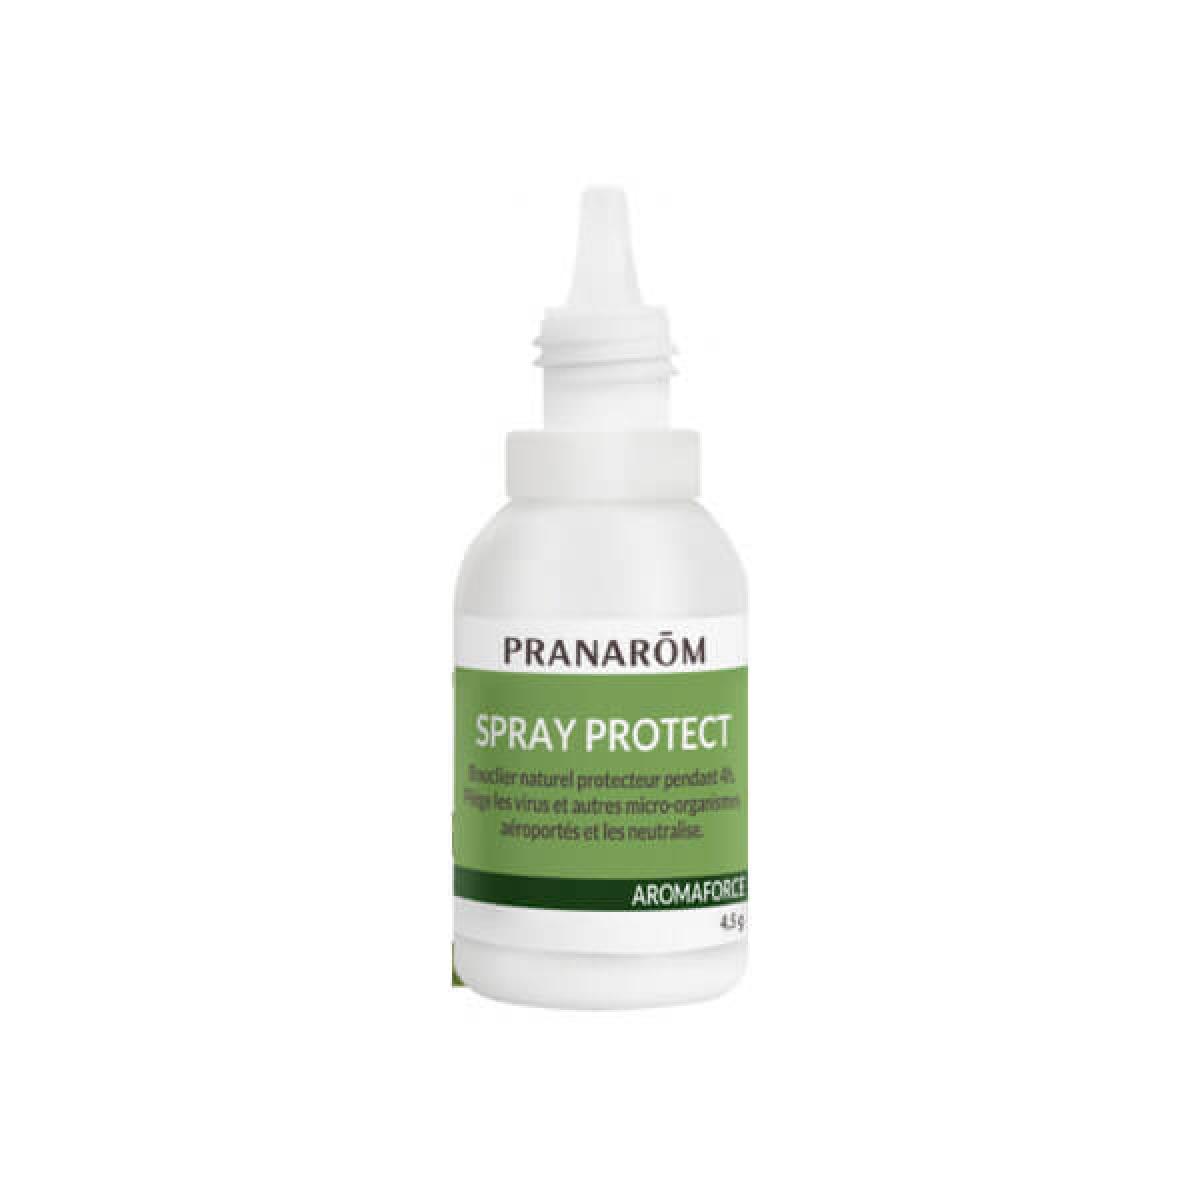 Pranarom Spray Protect 4,5g